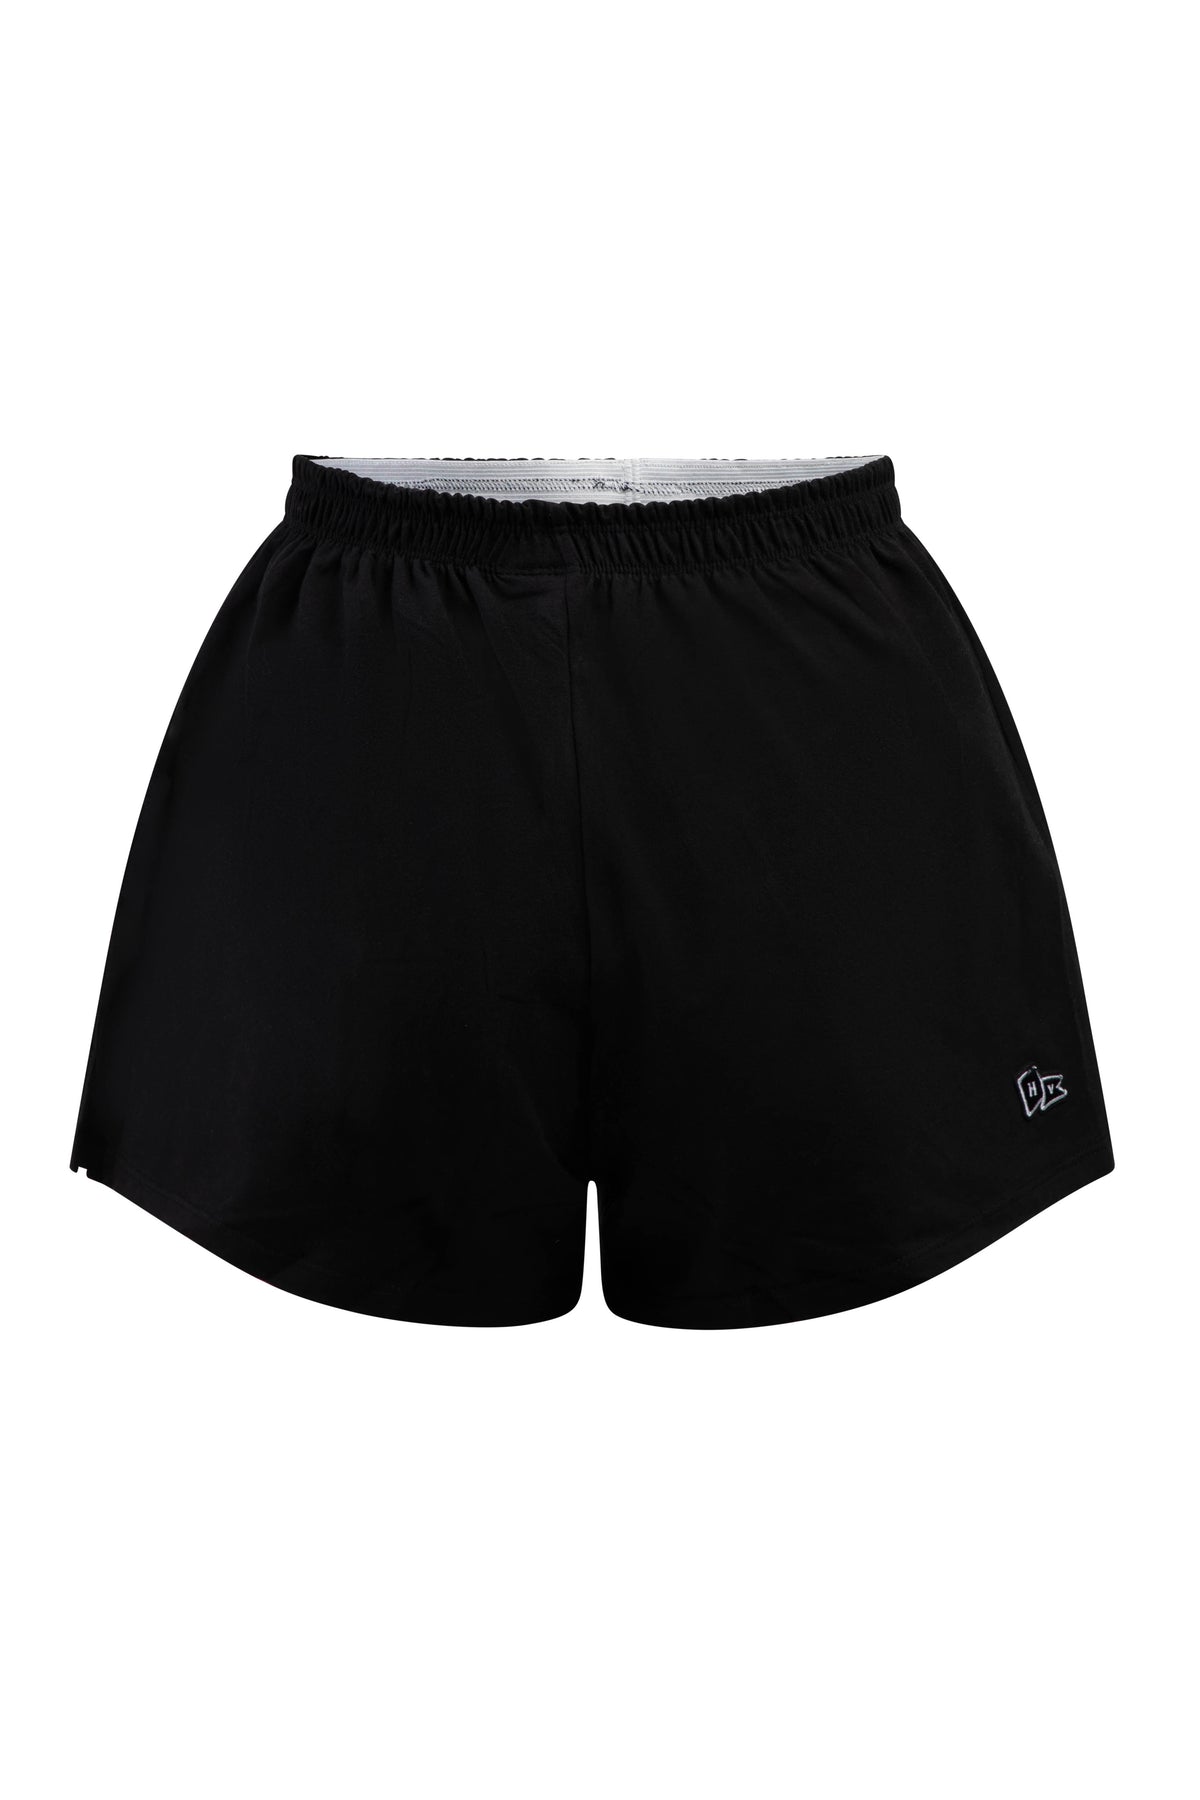 Minnesota United P.E. Shorts